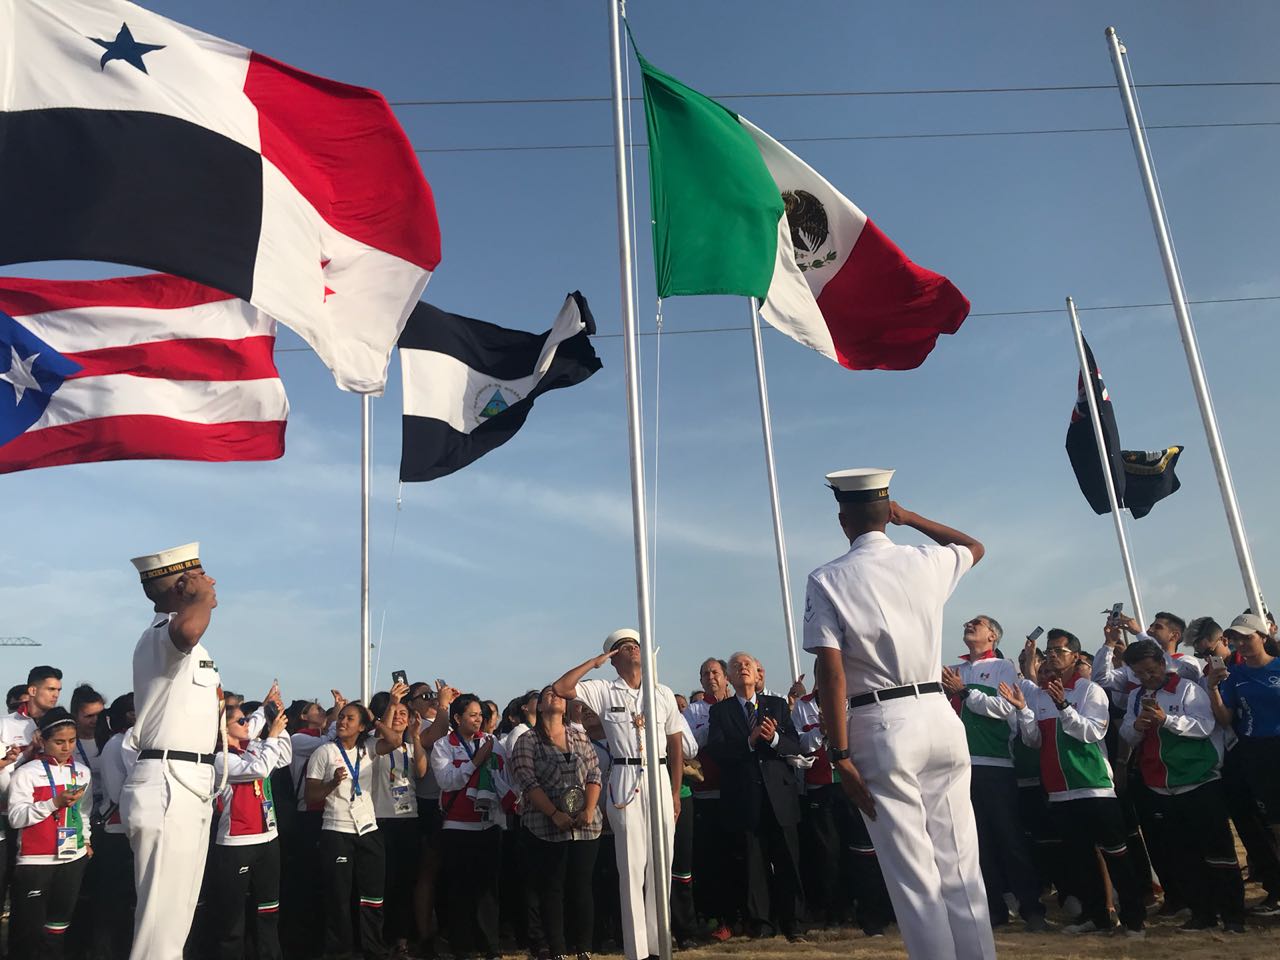 Los atletas mexicanos estuvieron emocionados en el izamiento del lábaro patrio